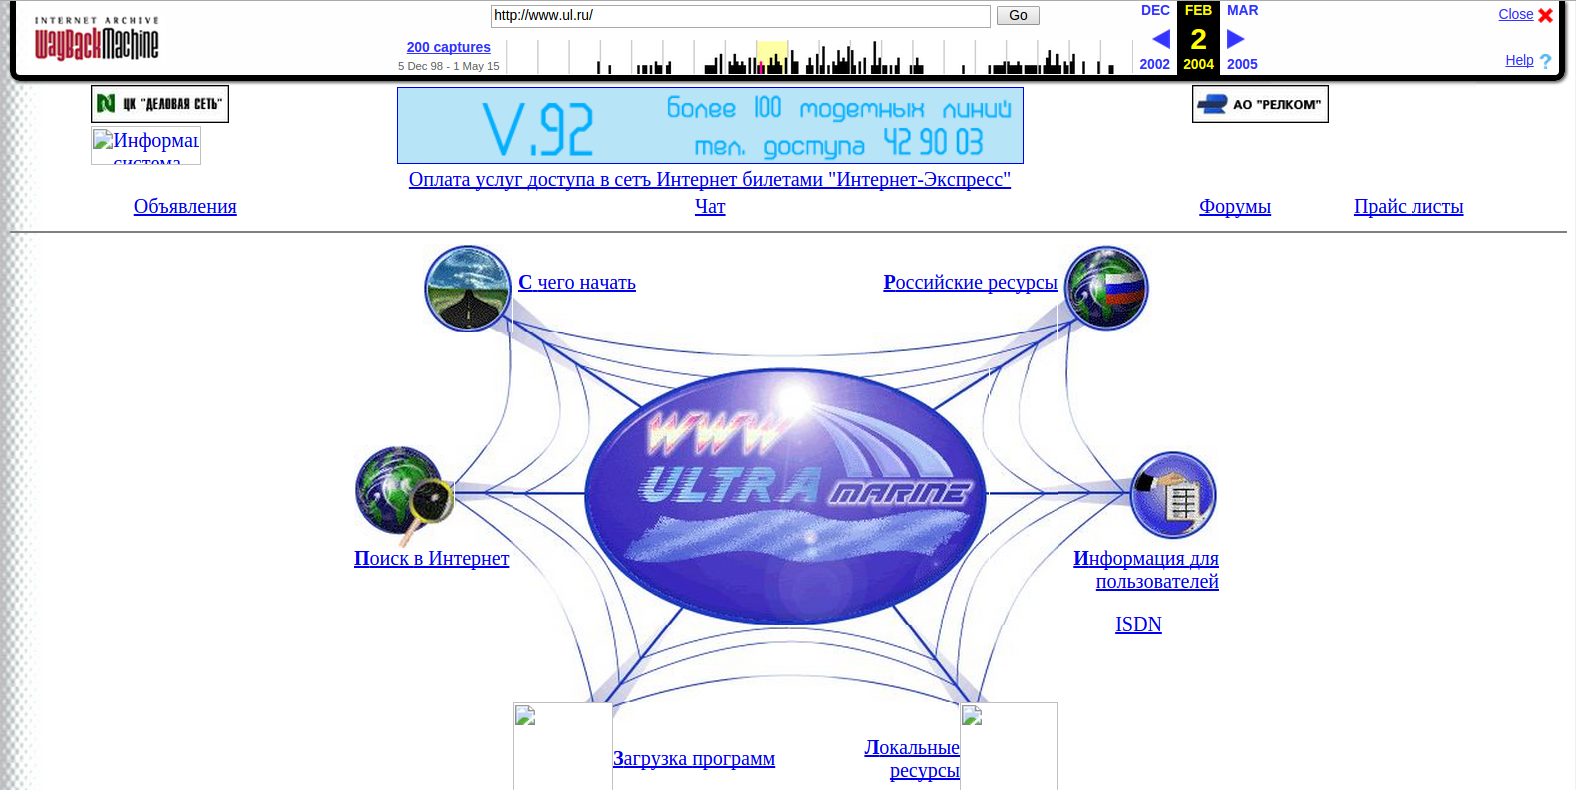 Сайт провайдера Ультрамарин, состояние на февраль 2004